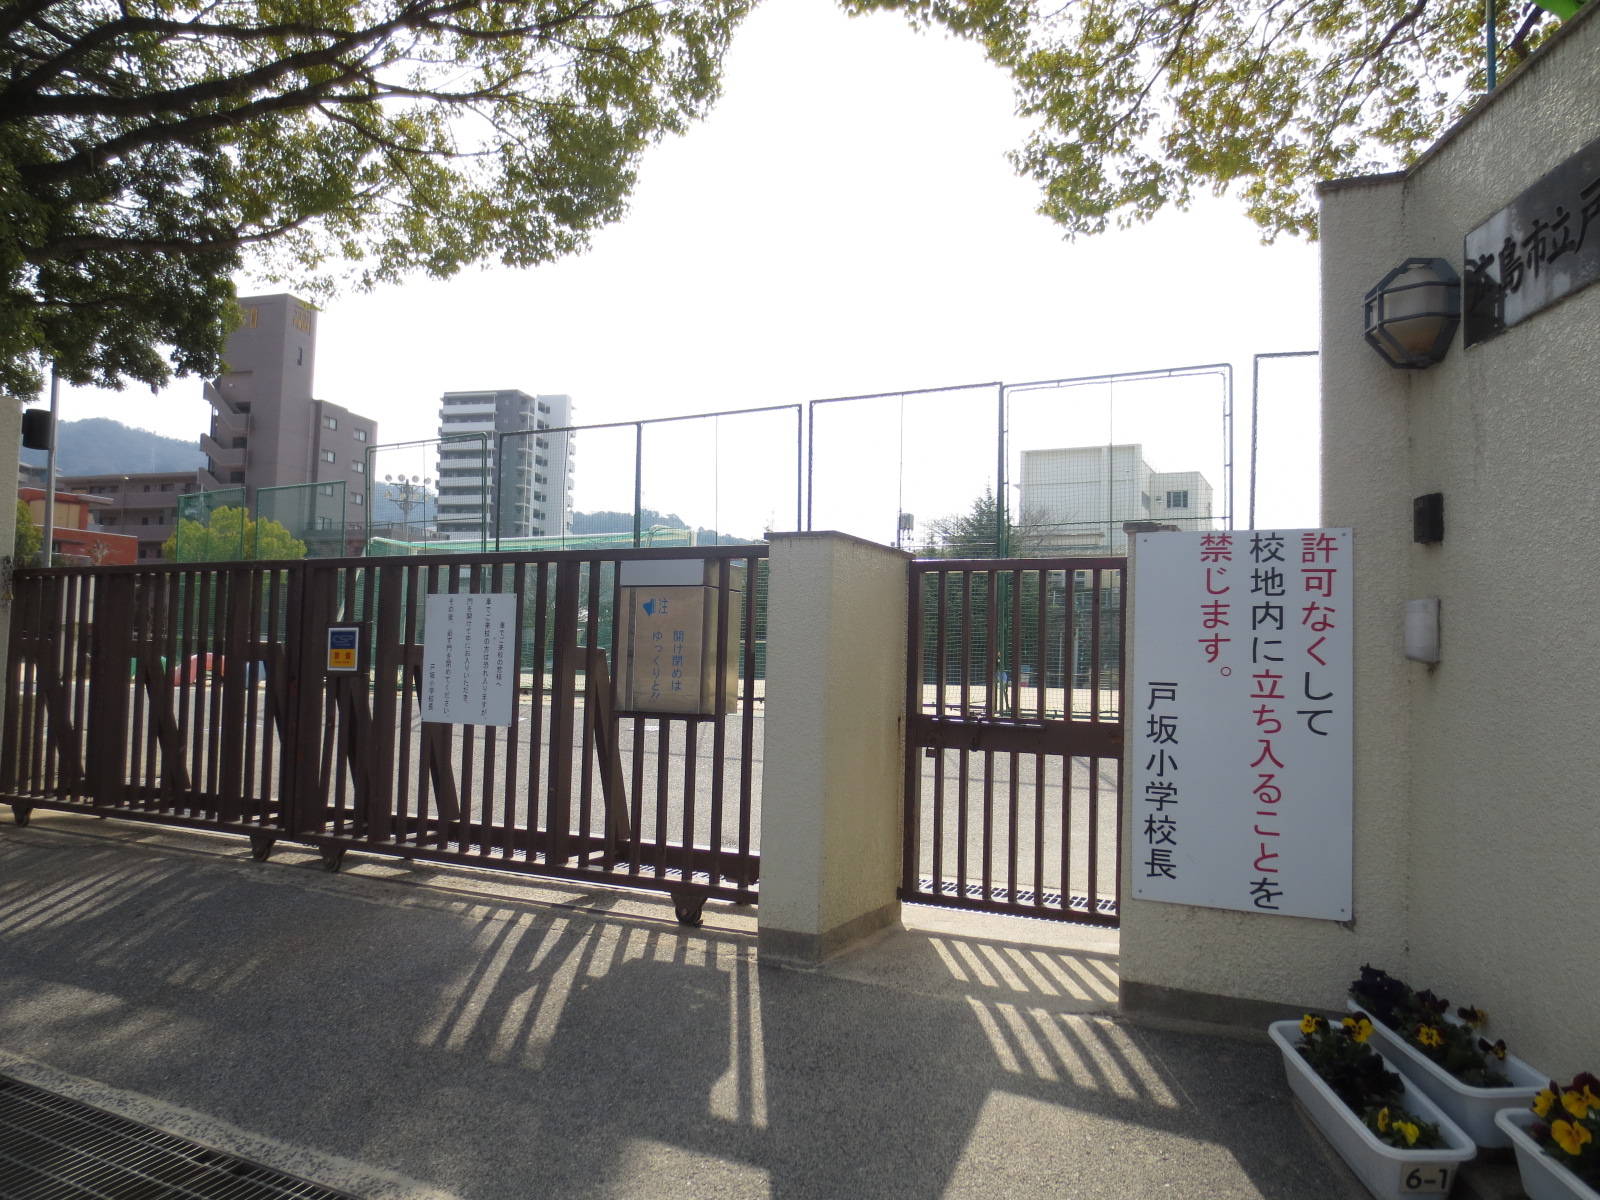 Primary school. 1132m to Hiroshima Municipal Tosaka elementary school (elementary school)